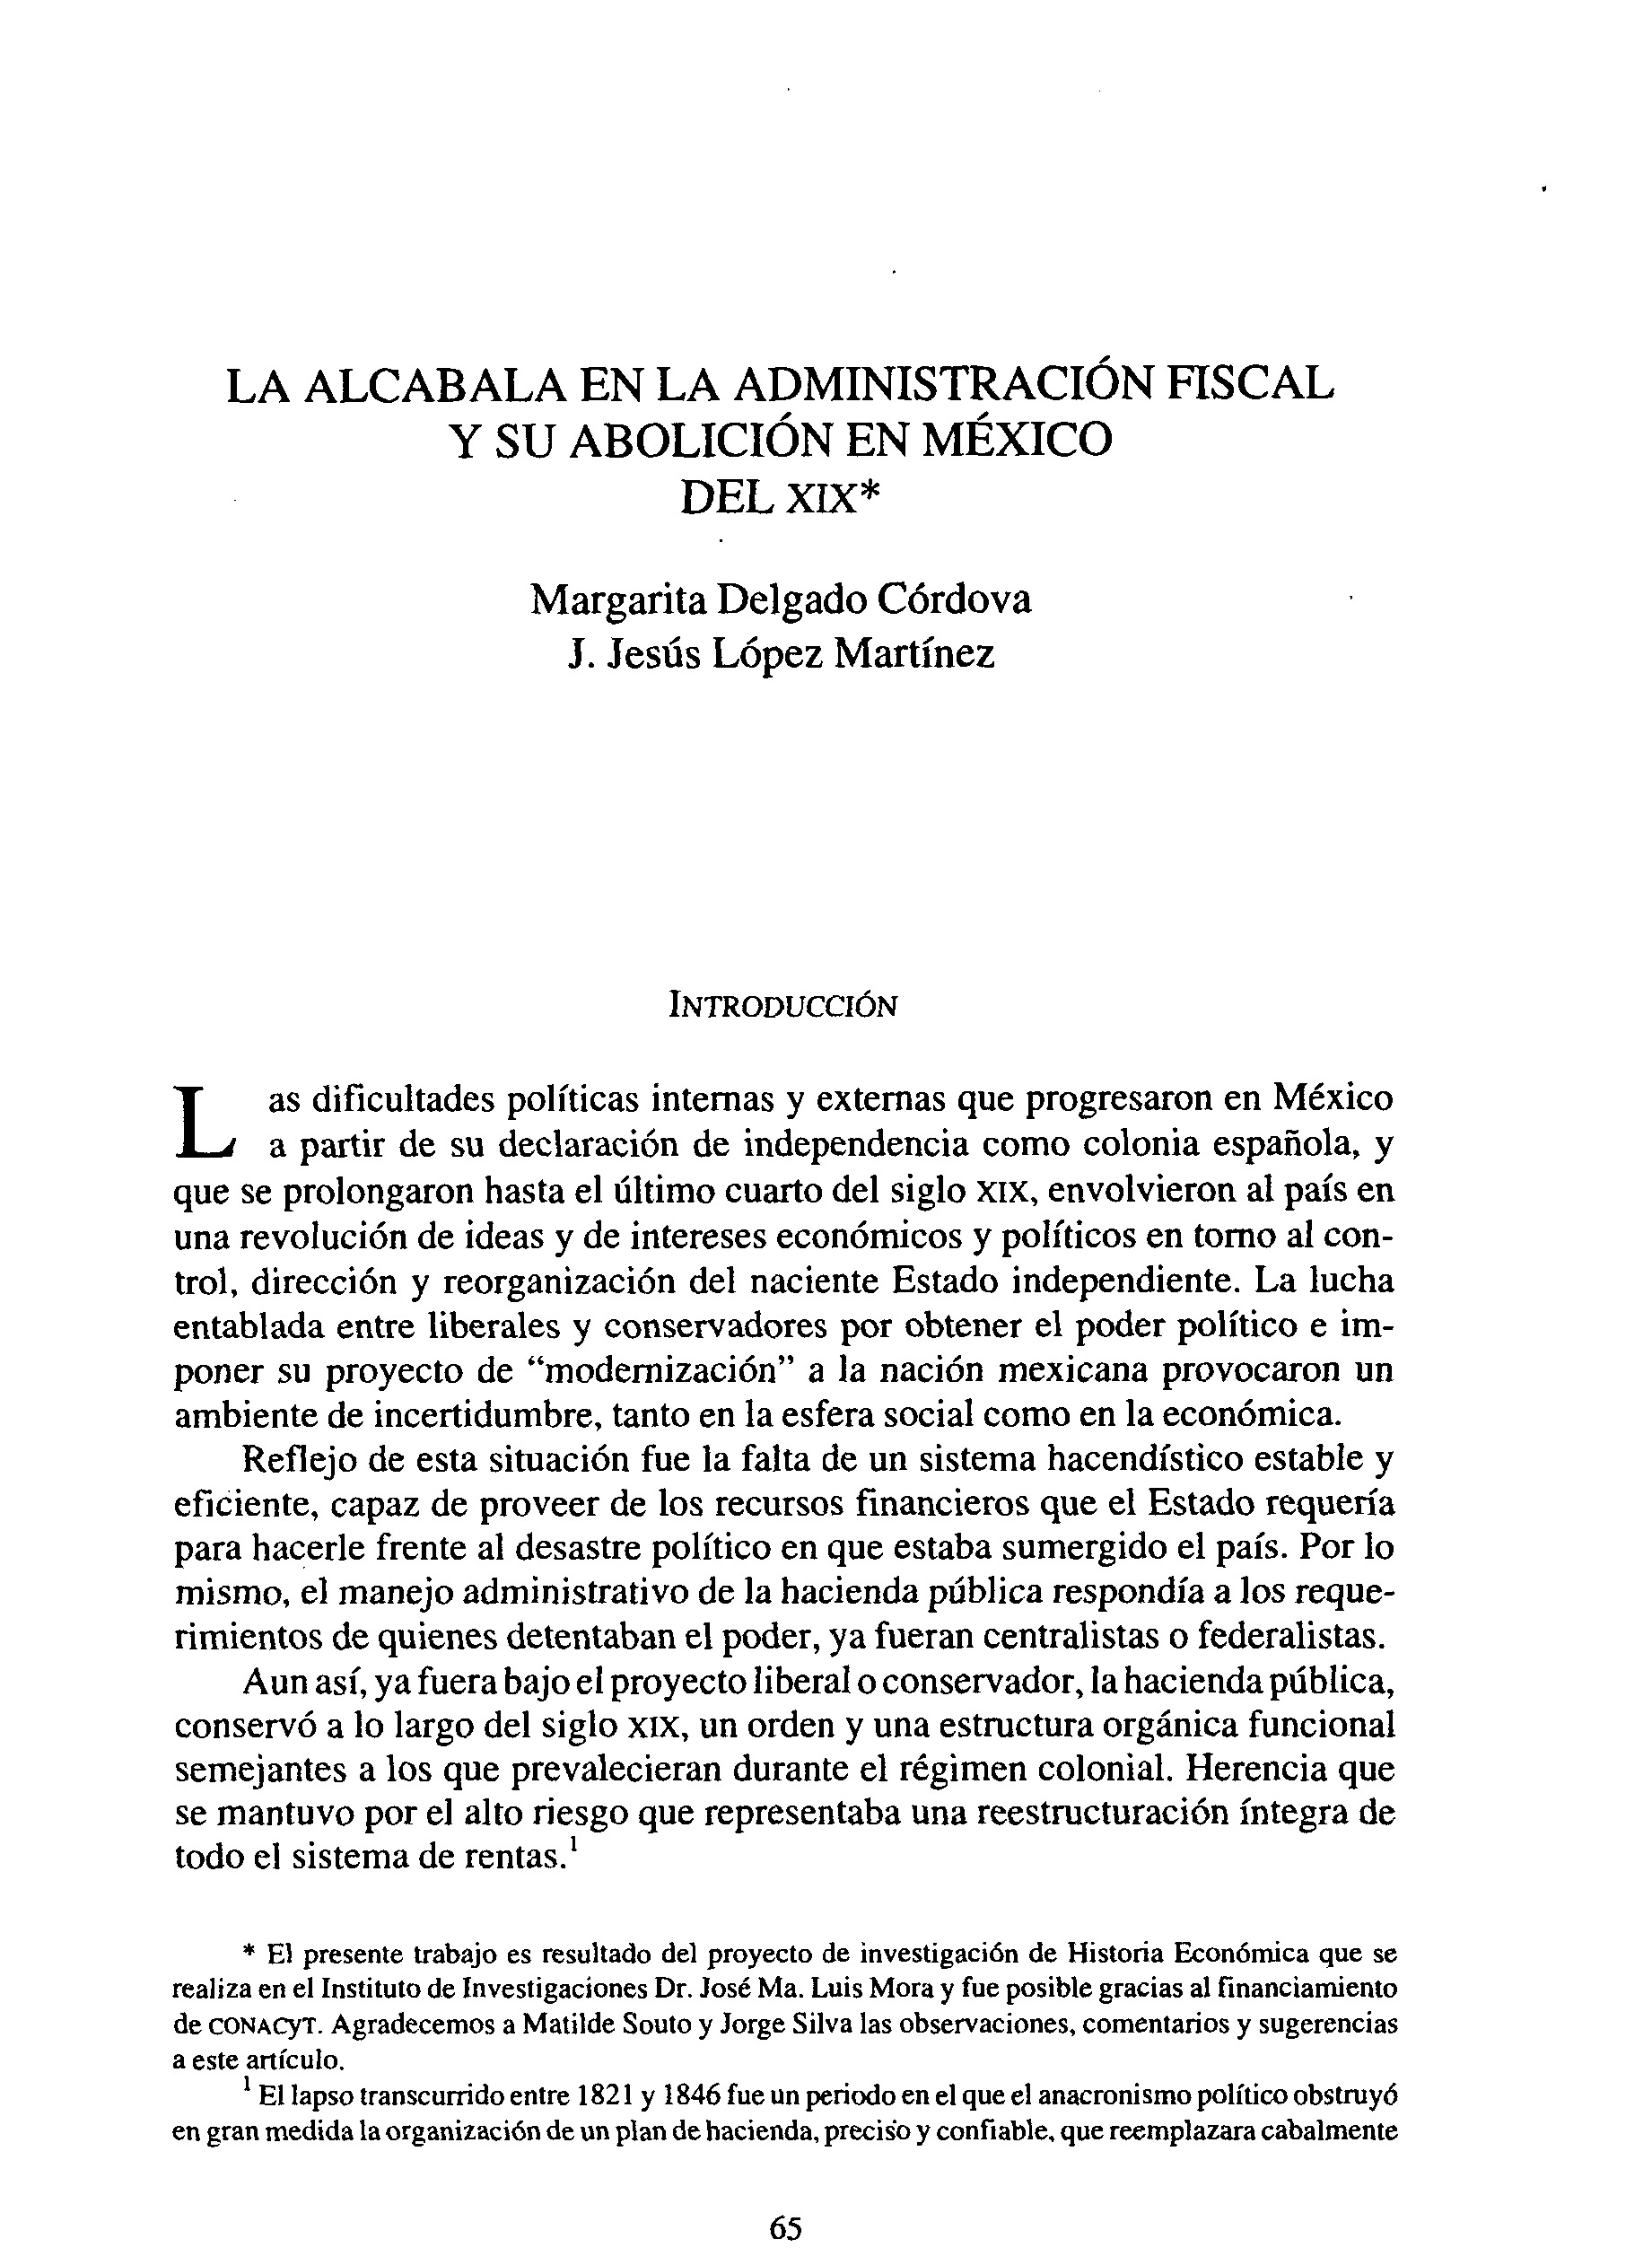 La alcabala en la administración fiscal y su abolición en México del XIX